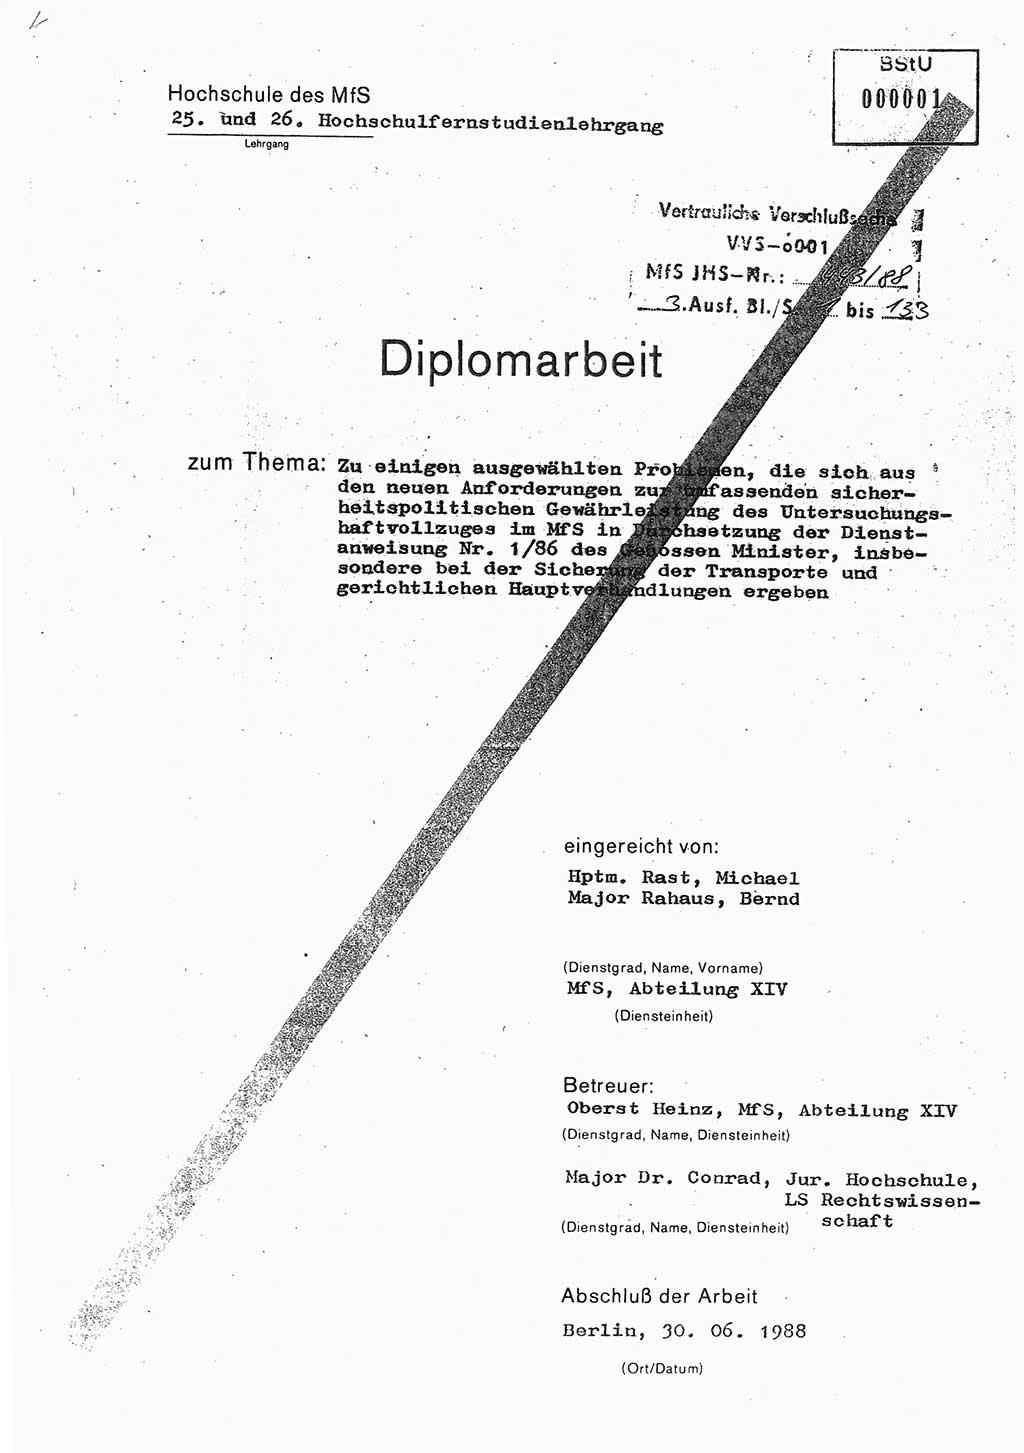 Diplomarbeit Hauptmann Michael Rast (Abt. ⅩⅣ), Major Bernd Rahaus (Abt. ⅩⅣ), Ministerium für Staatssicherheit (MfS) [Deutsche Demokratische Republik (DDR)], Juristische Hochschule (JHS), Vertrauliche Verschlußsache (VVS) o001-443/88, Potsdam 1988, Seite 1 (Dipl.-Arb. MfS DDR JHS VVS o001-443/88 1988, S. 1)